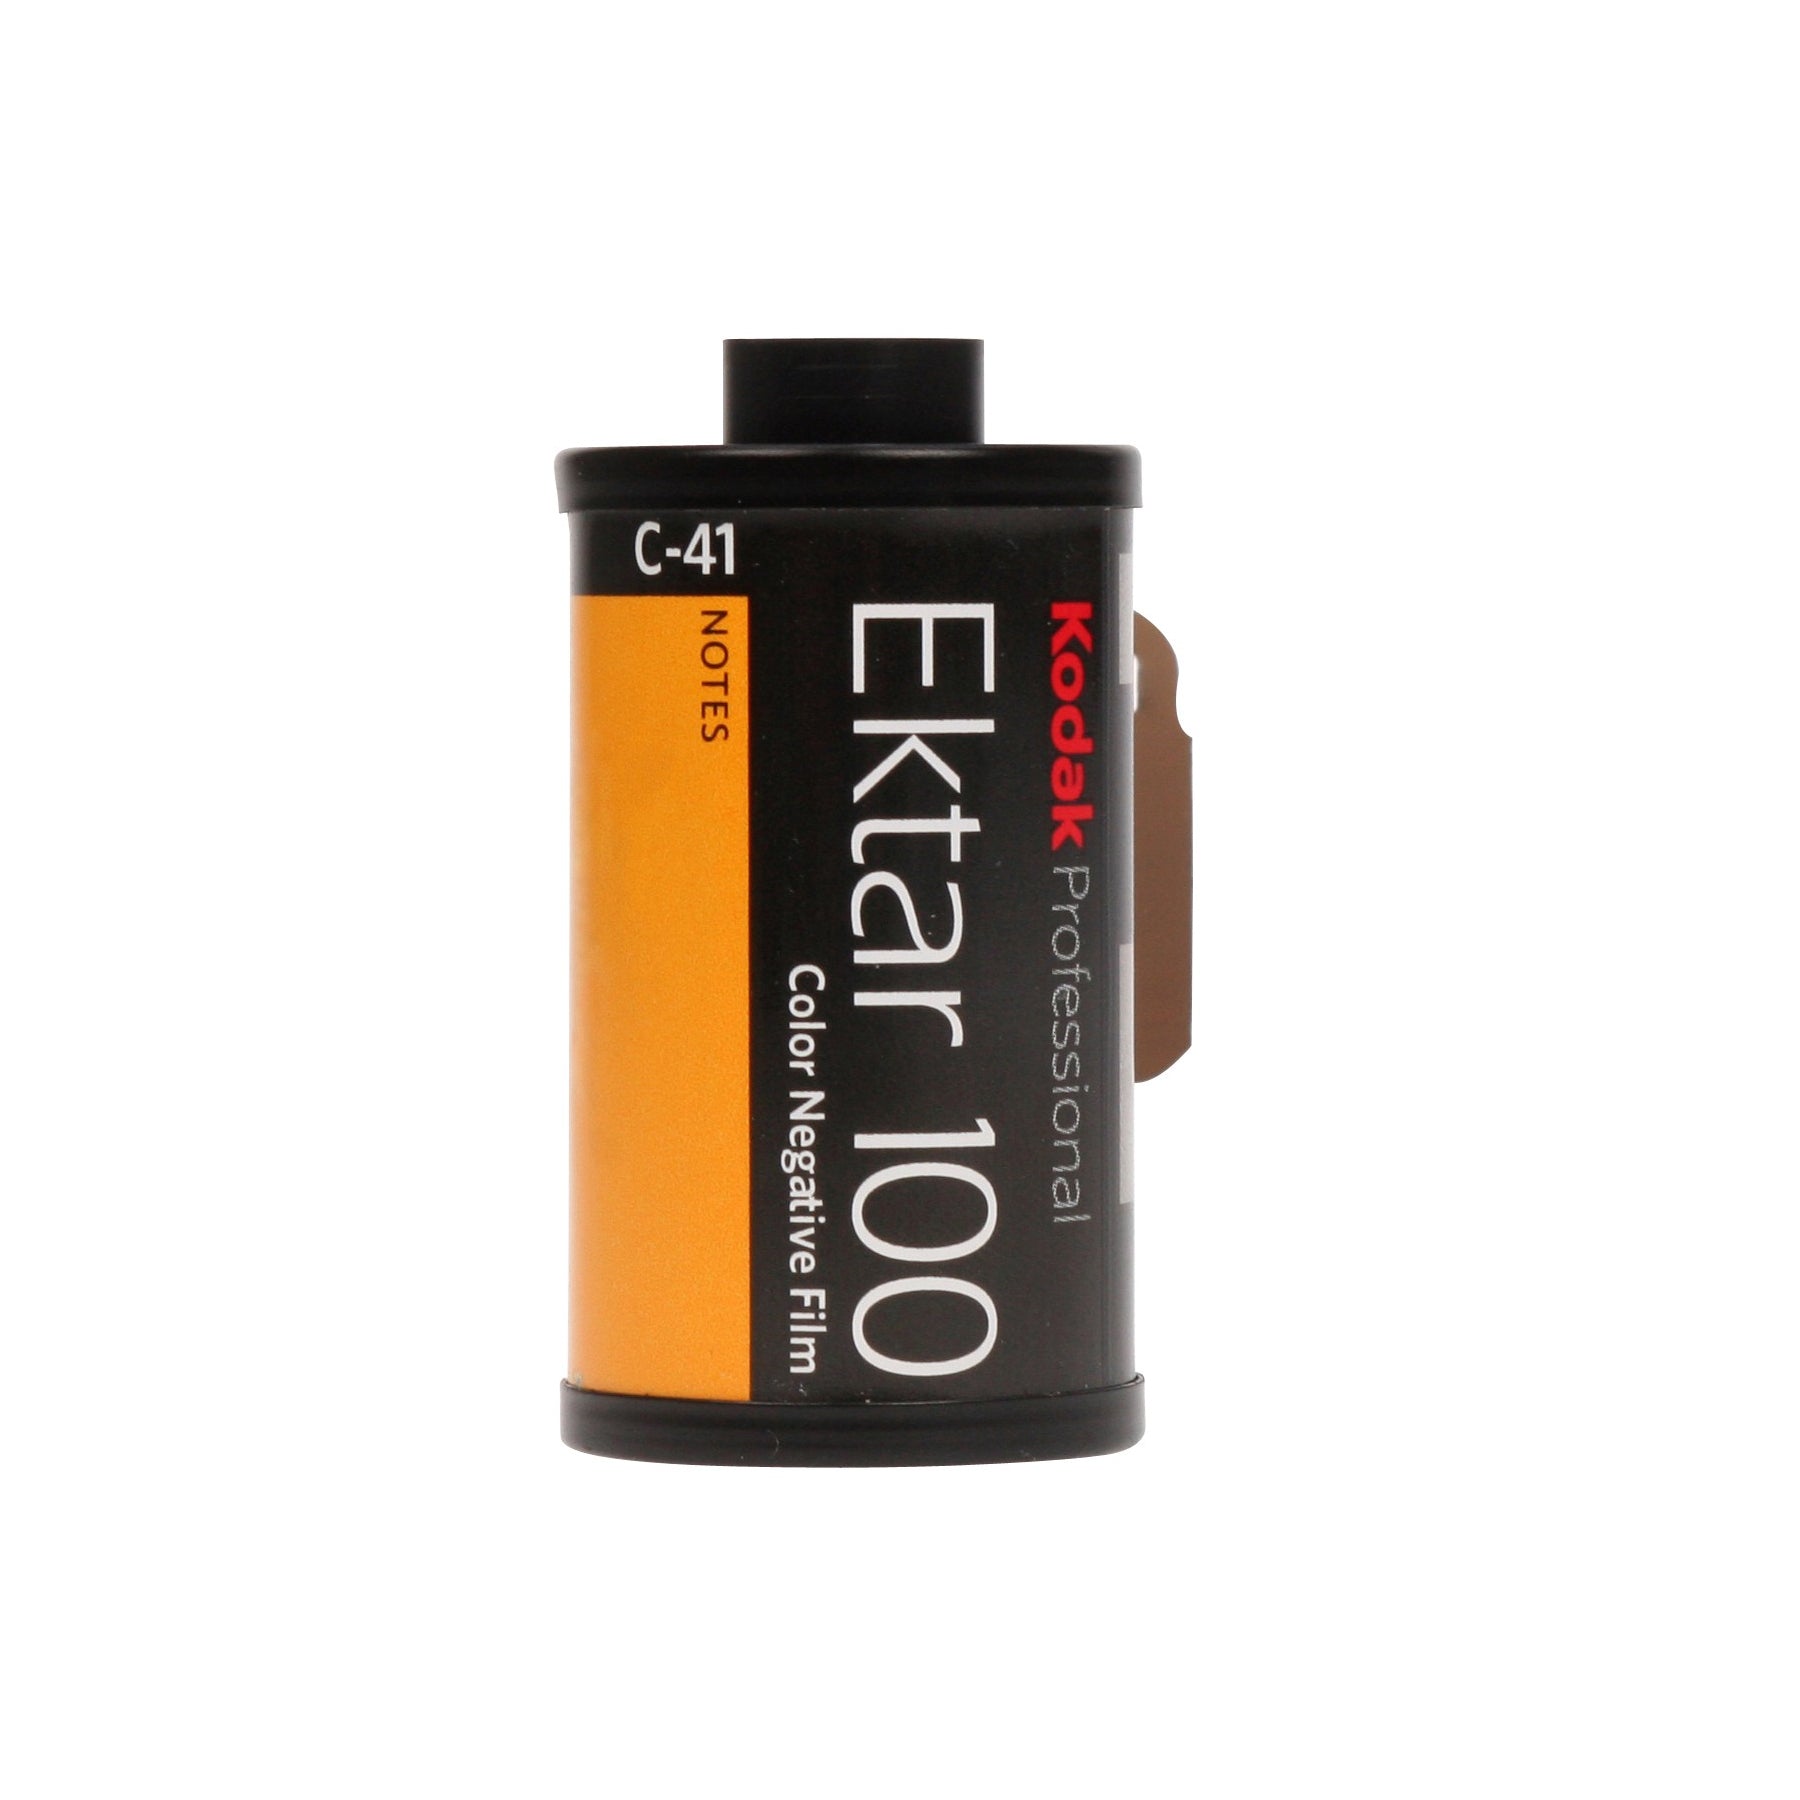 Kodak Ektar 100 Professionnel - 35 mm